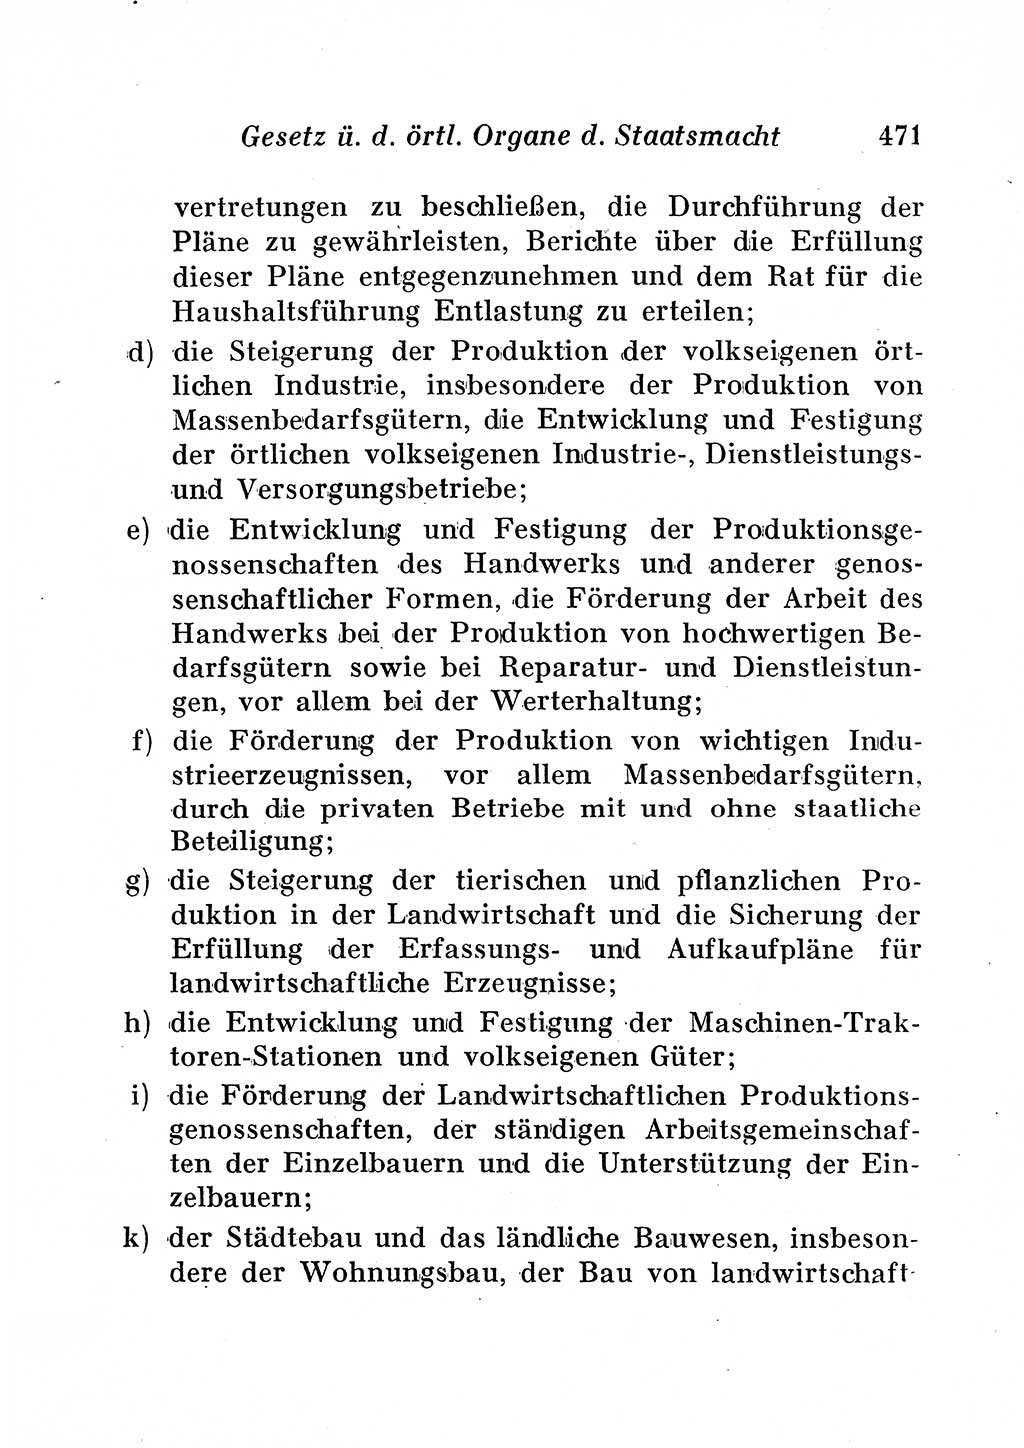 Staats- und verwaltungsrechtliche Gesetze der Deutschen Demokratischen Republik (DDR) 1958, Seite 471 (StVerwR Ges. DDR 1958, S. 471)